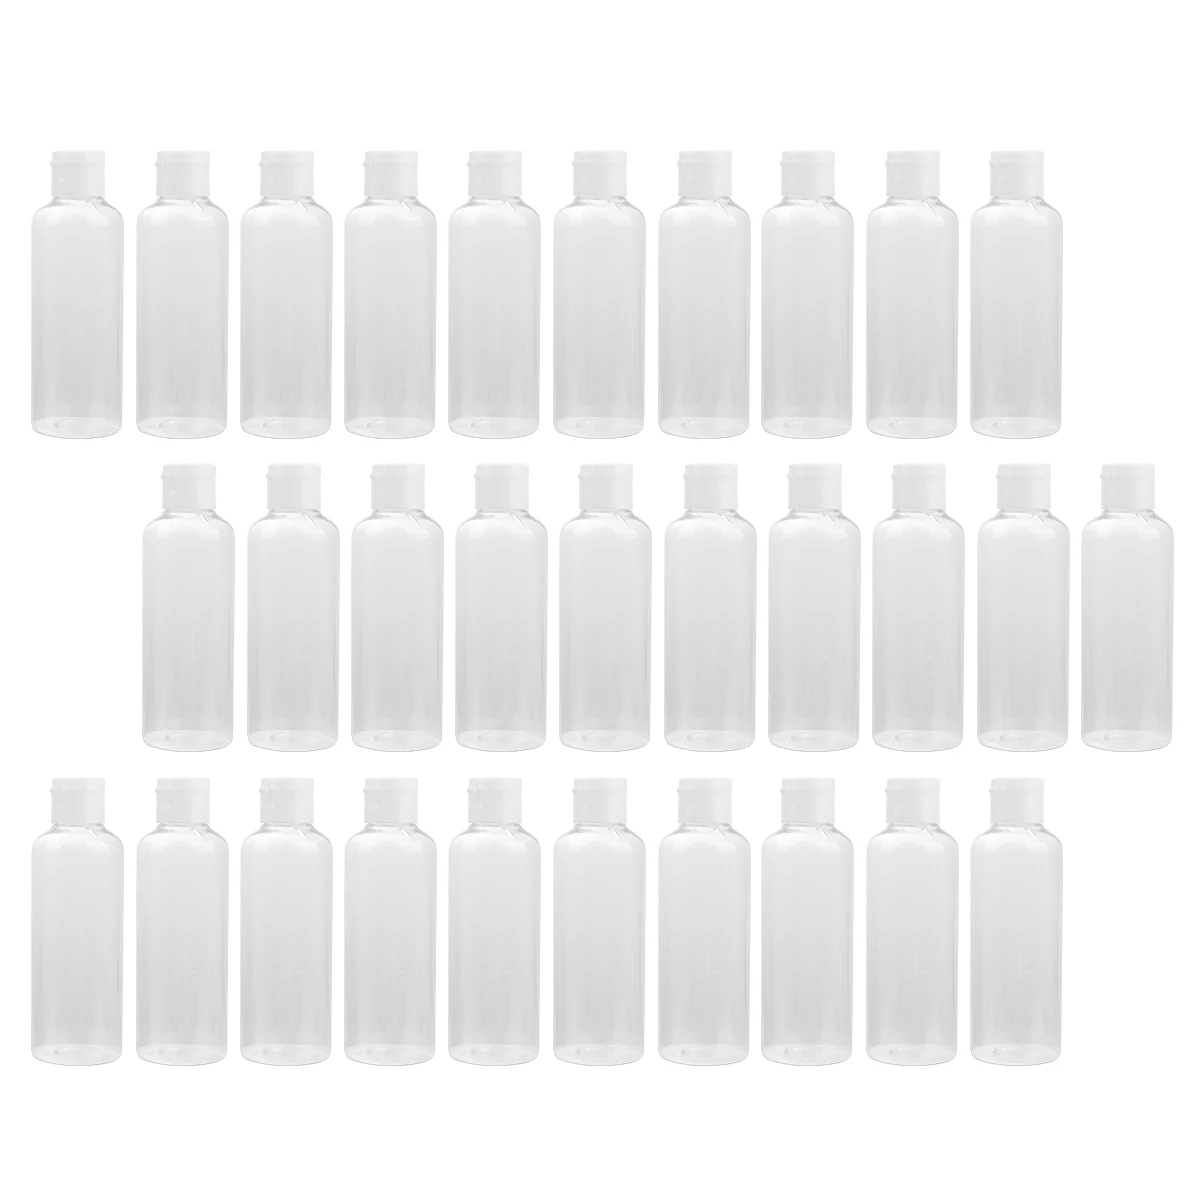 30 Pcs Travel Toiletry Bottles Sauce Containers Reusable Plastic Lotion Bottle Travel Shampoo Bottles Caps